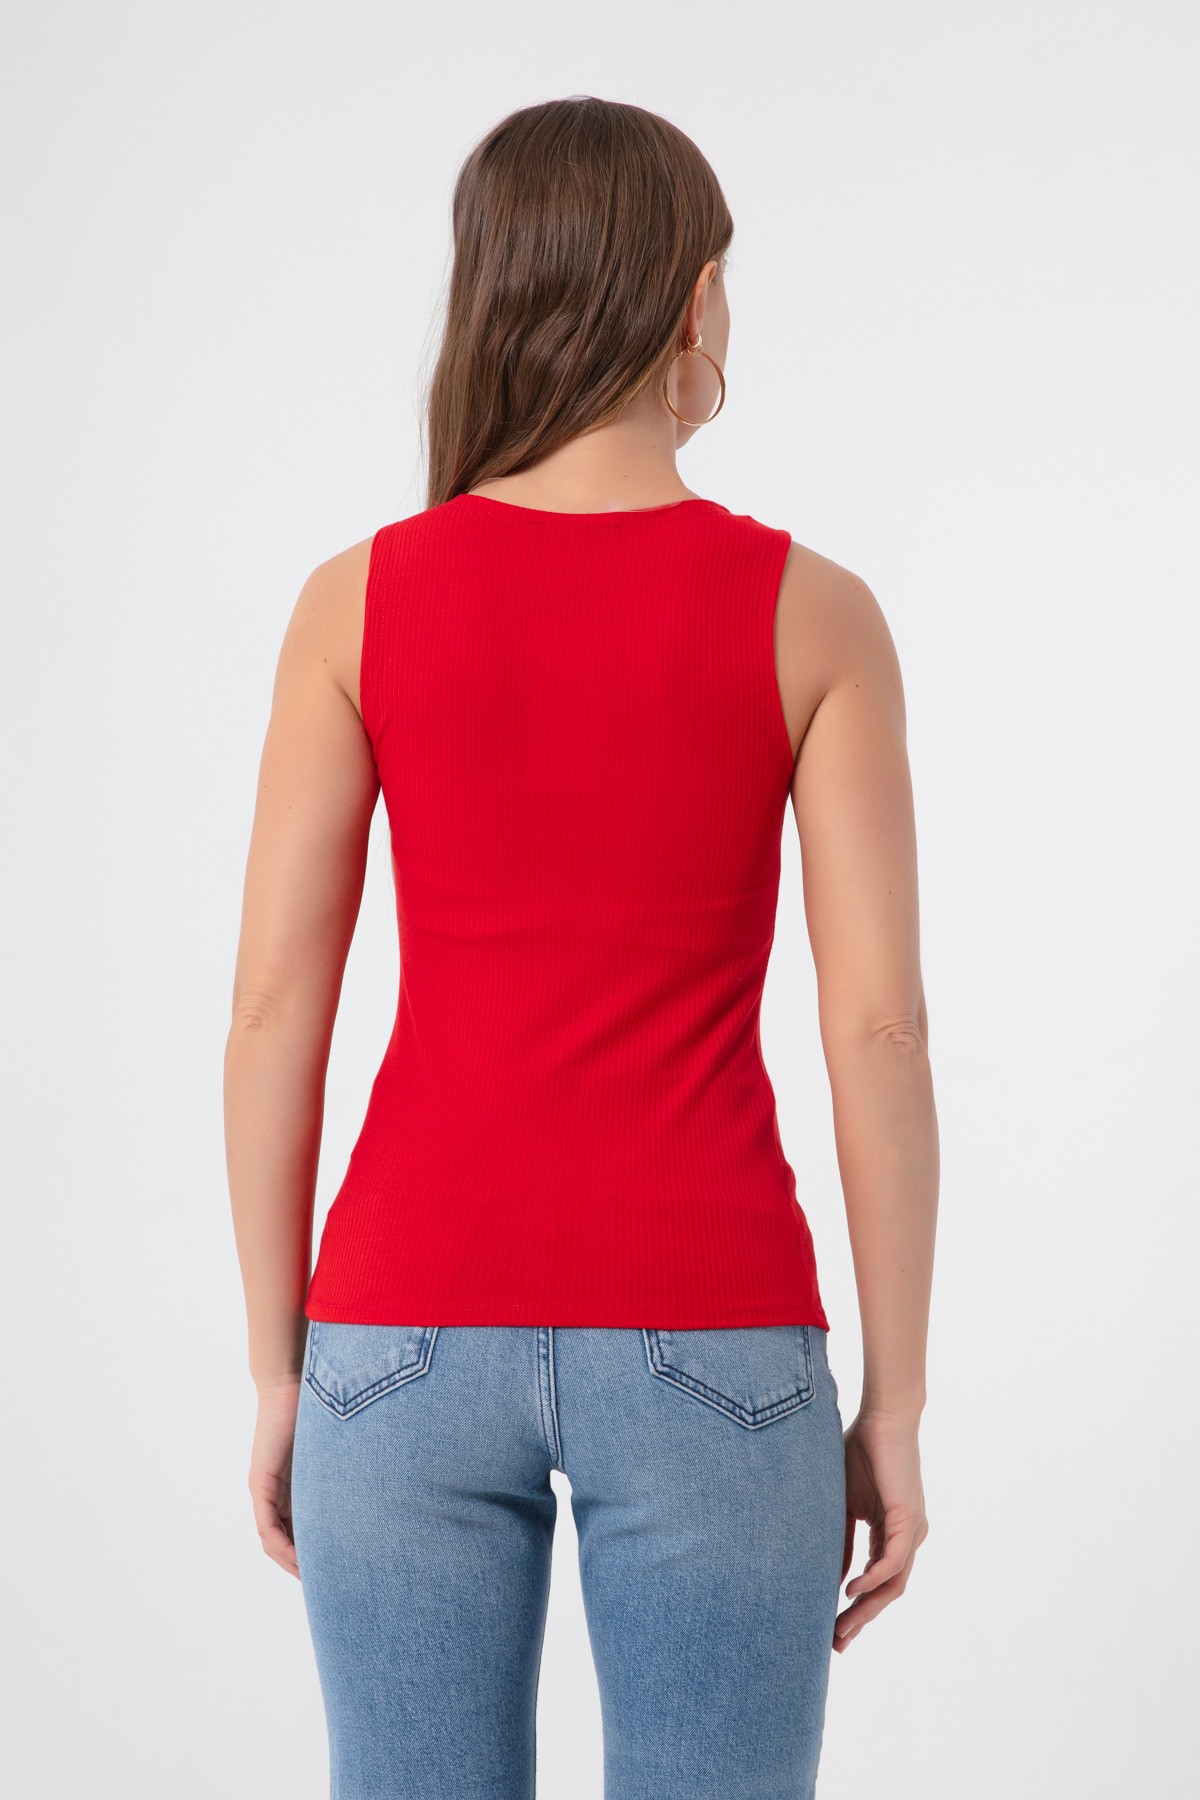 Kadın Zincir Kolyeli Örme Bluz - Kırmızı